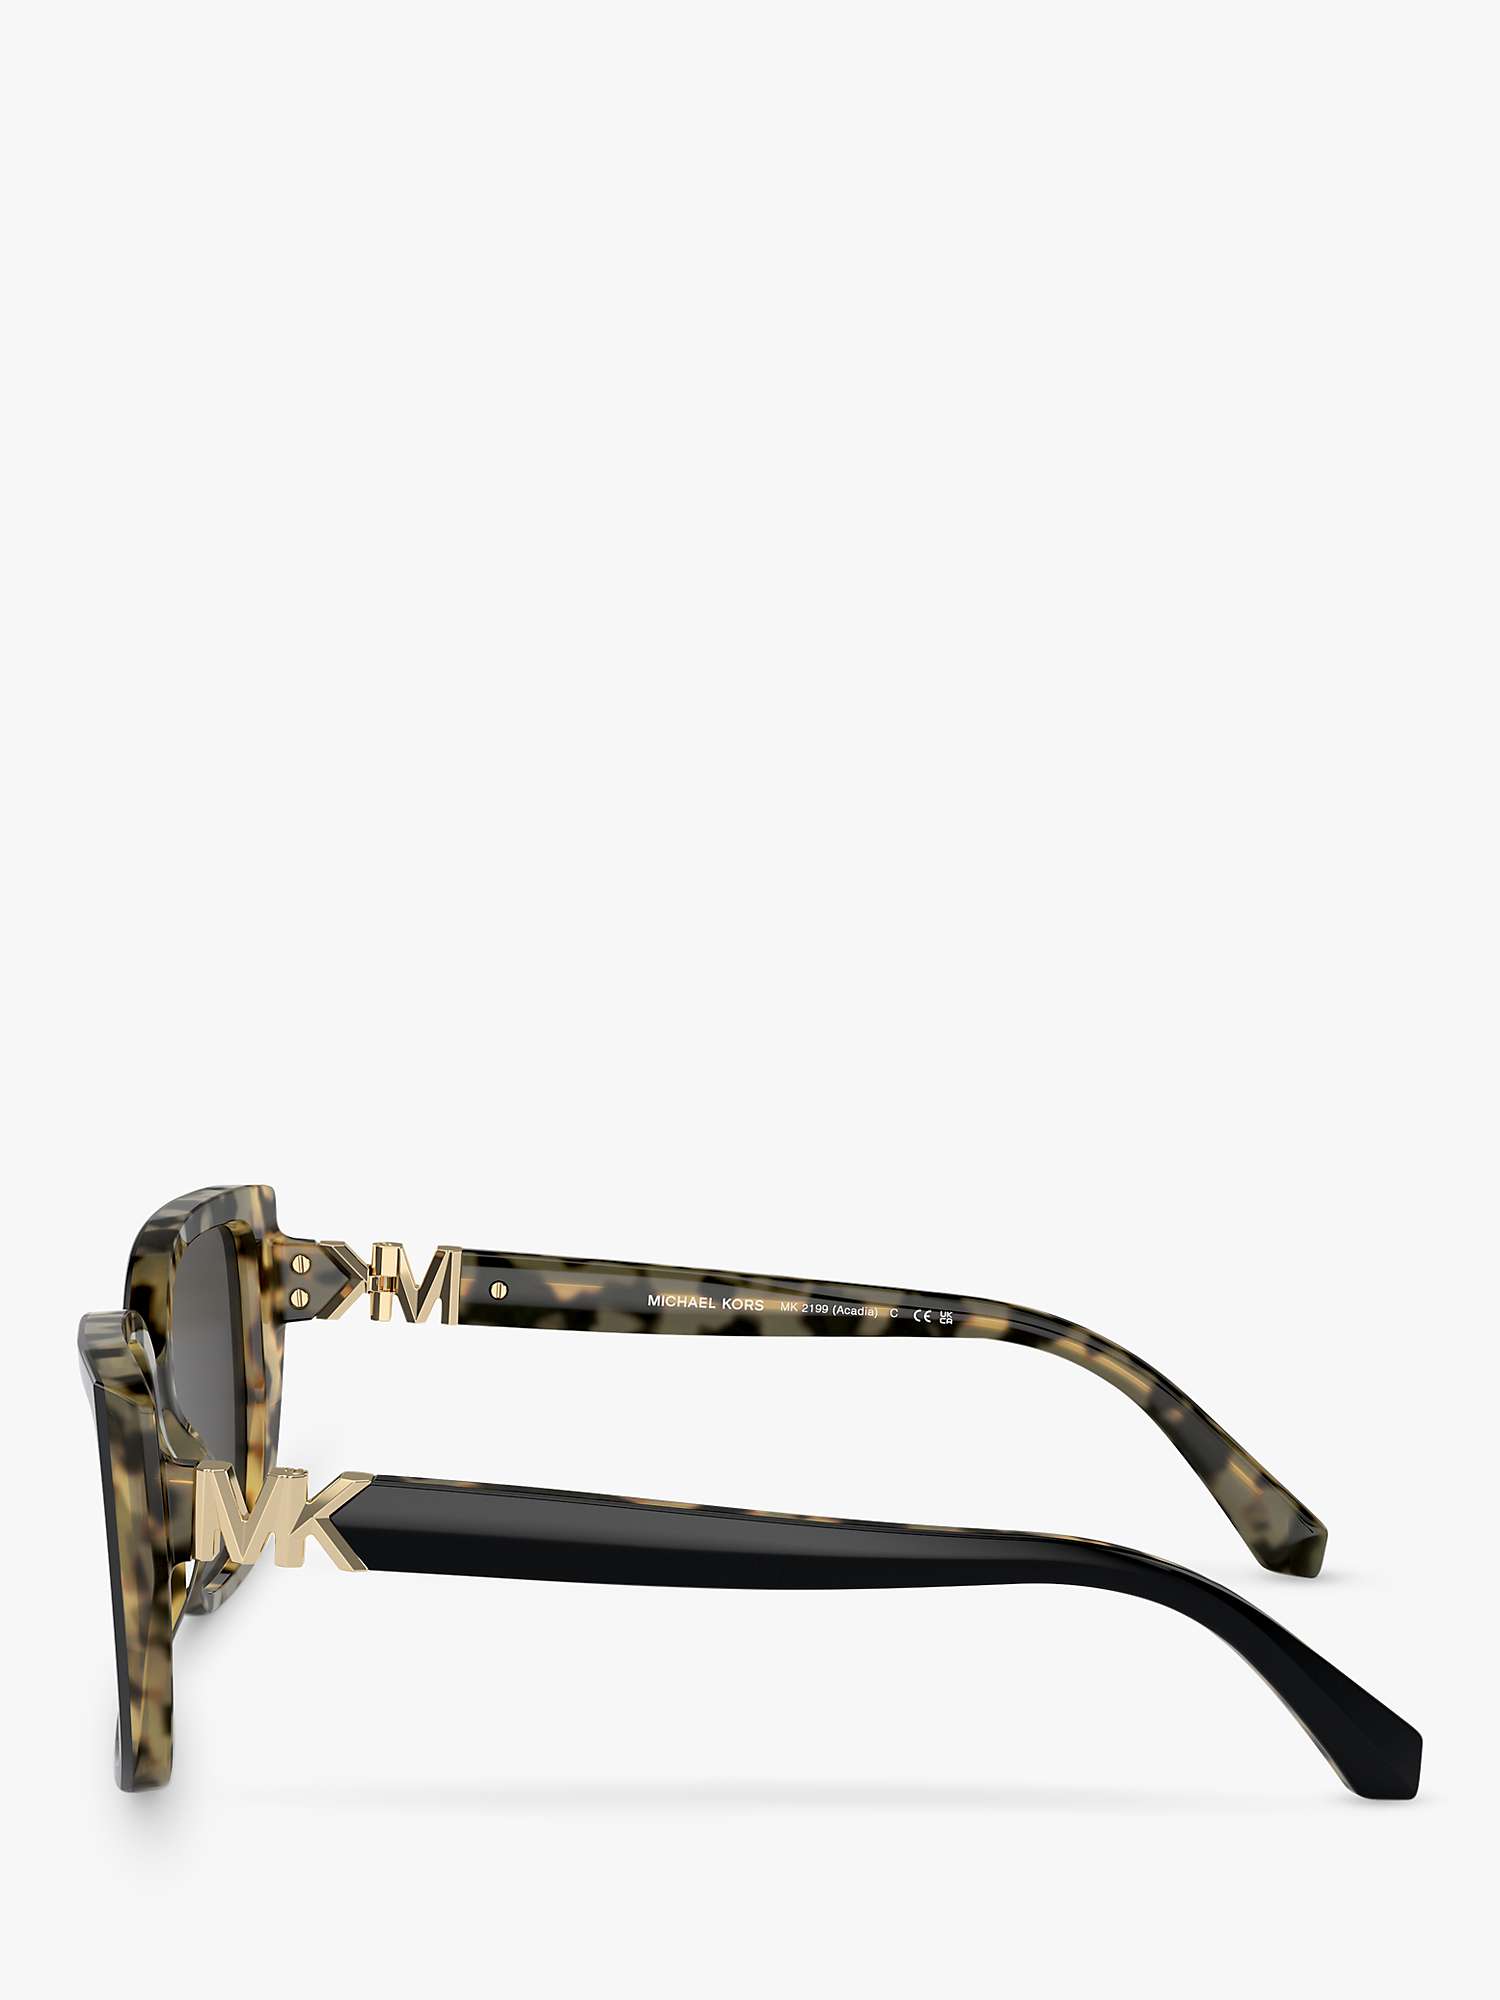 Buy Michael Kors MK2199 Women's Acadia D-Frame Sunglasses, Black on Amber Tortoise/Grey Online at johnlewis.com